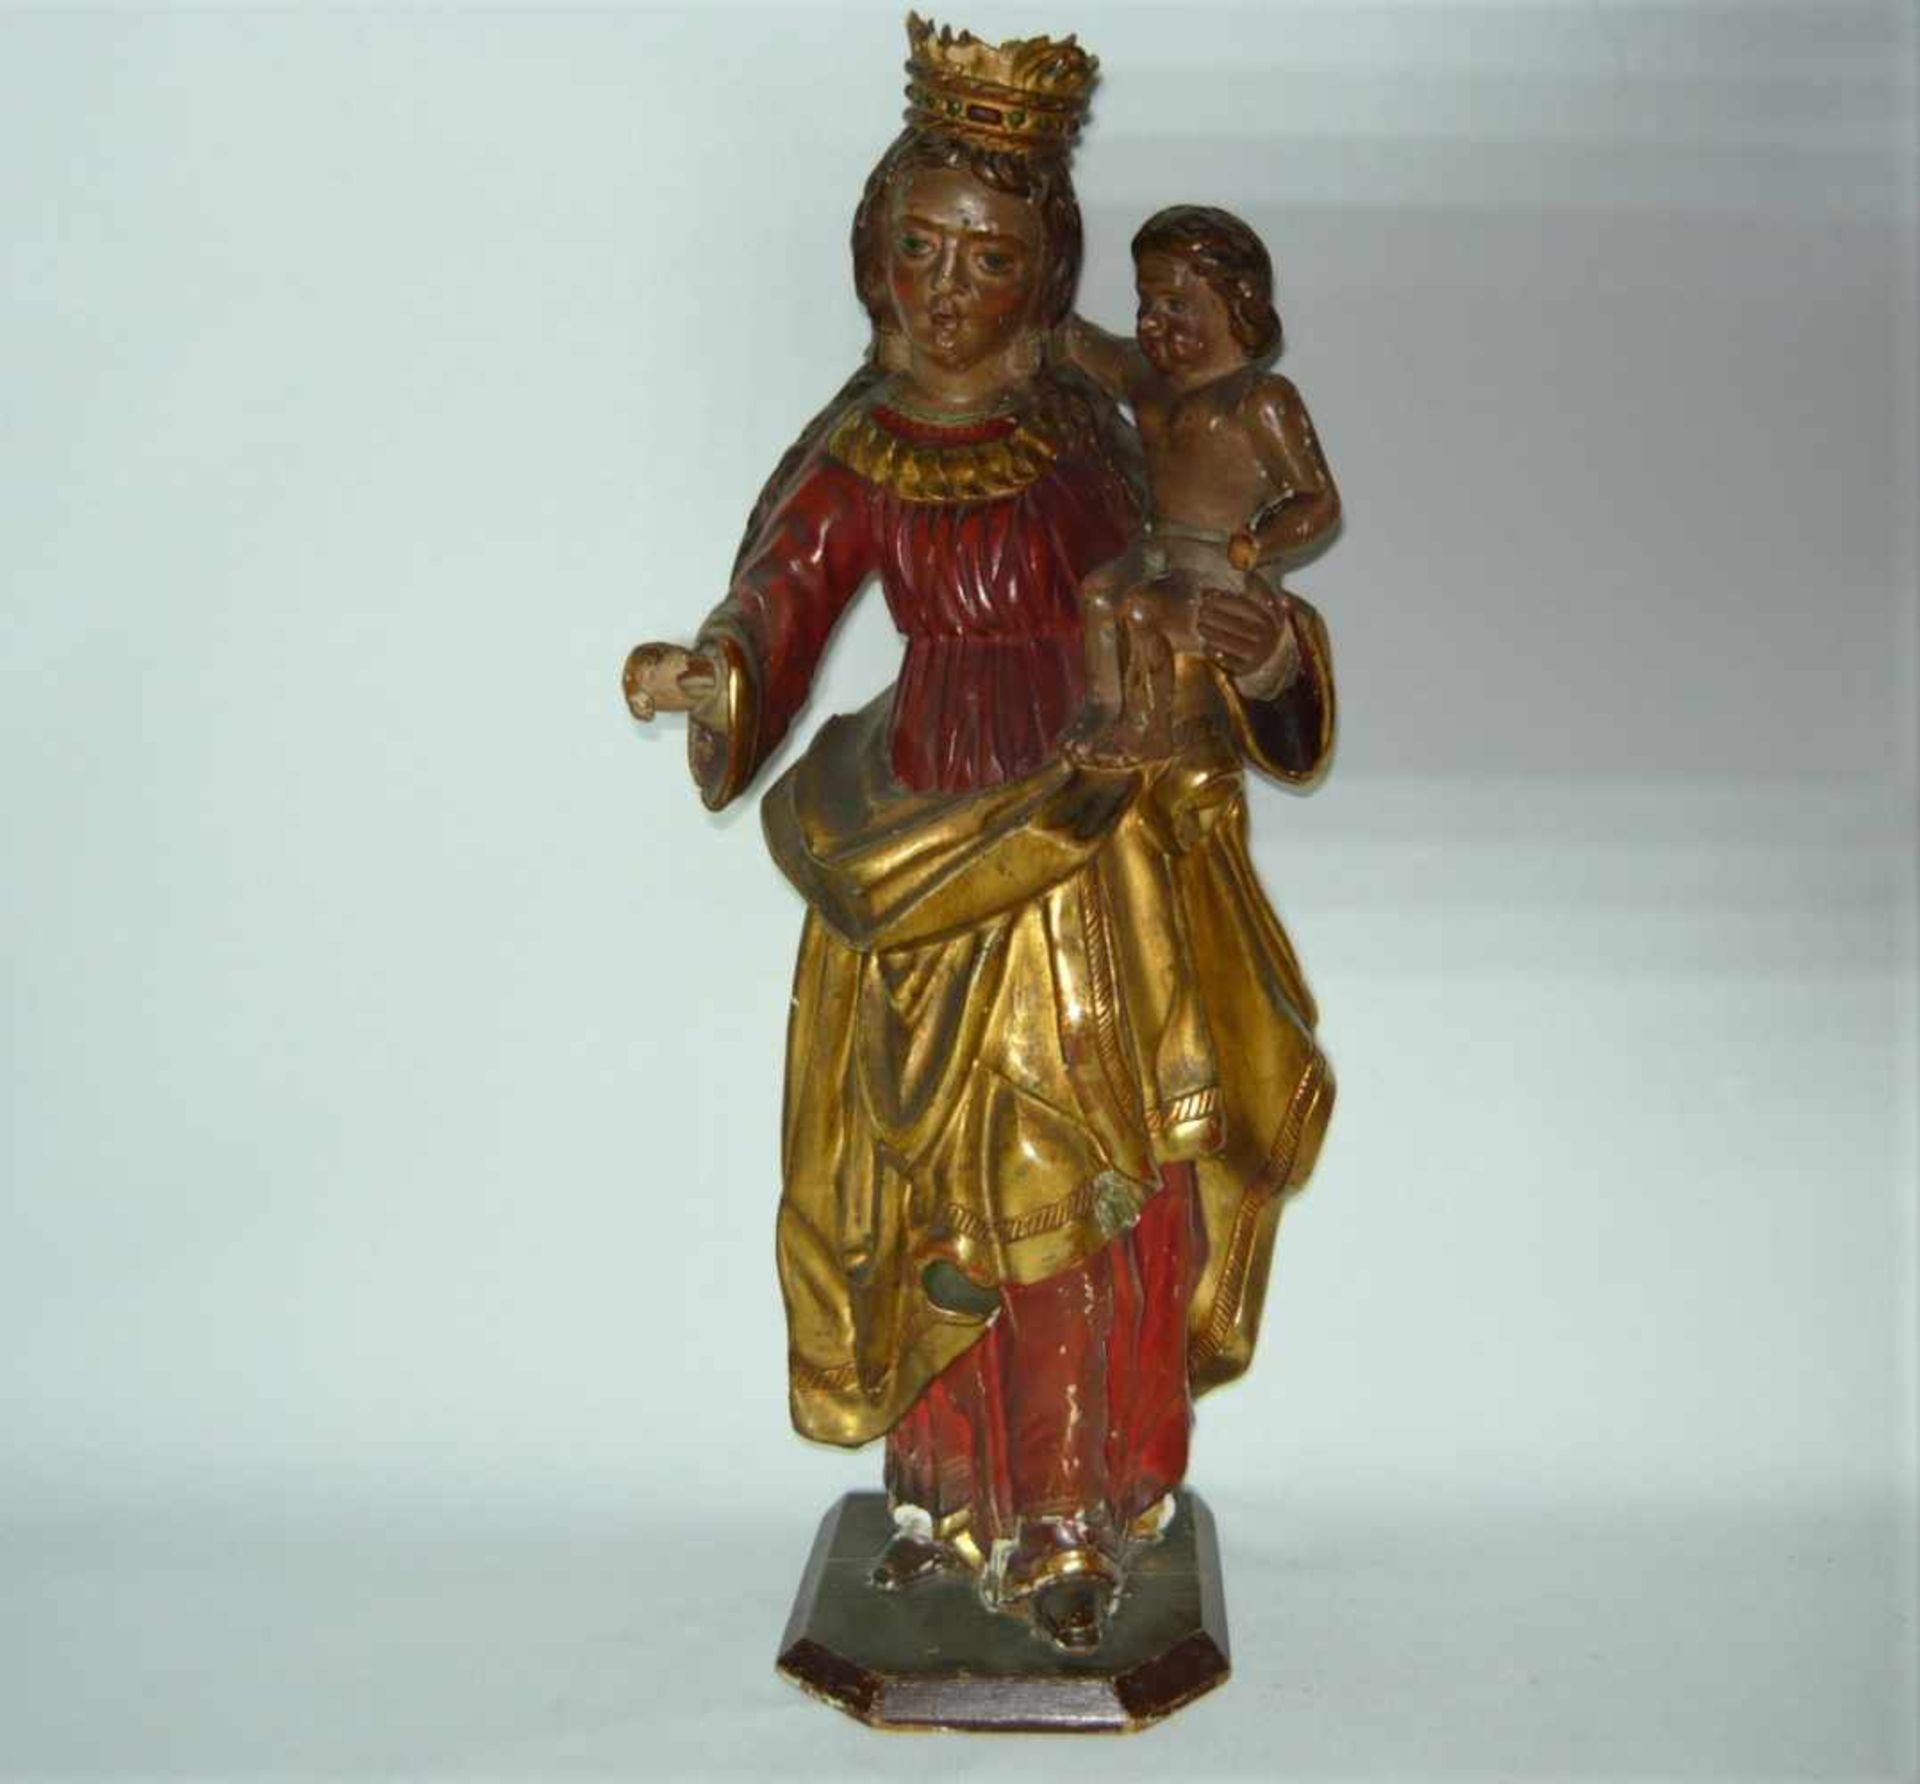 Stehende Maria mit Christuskind. Holz handgeschnitzt und bemalt. Wohl Süddeutsch oder Österreich vor